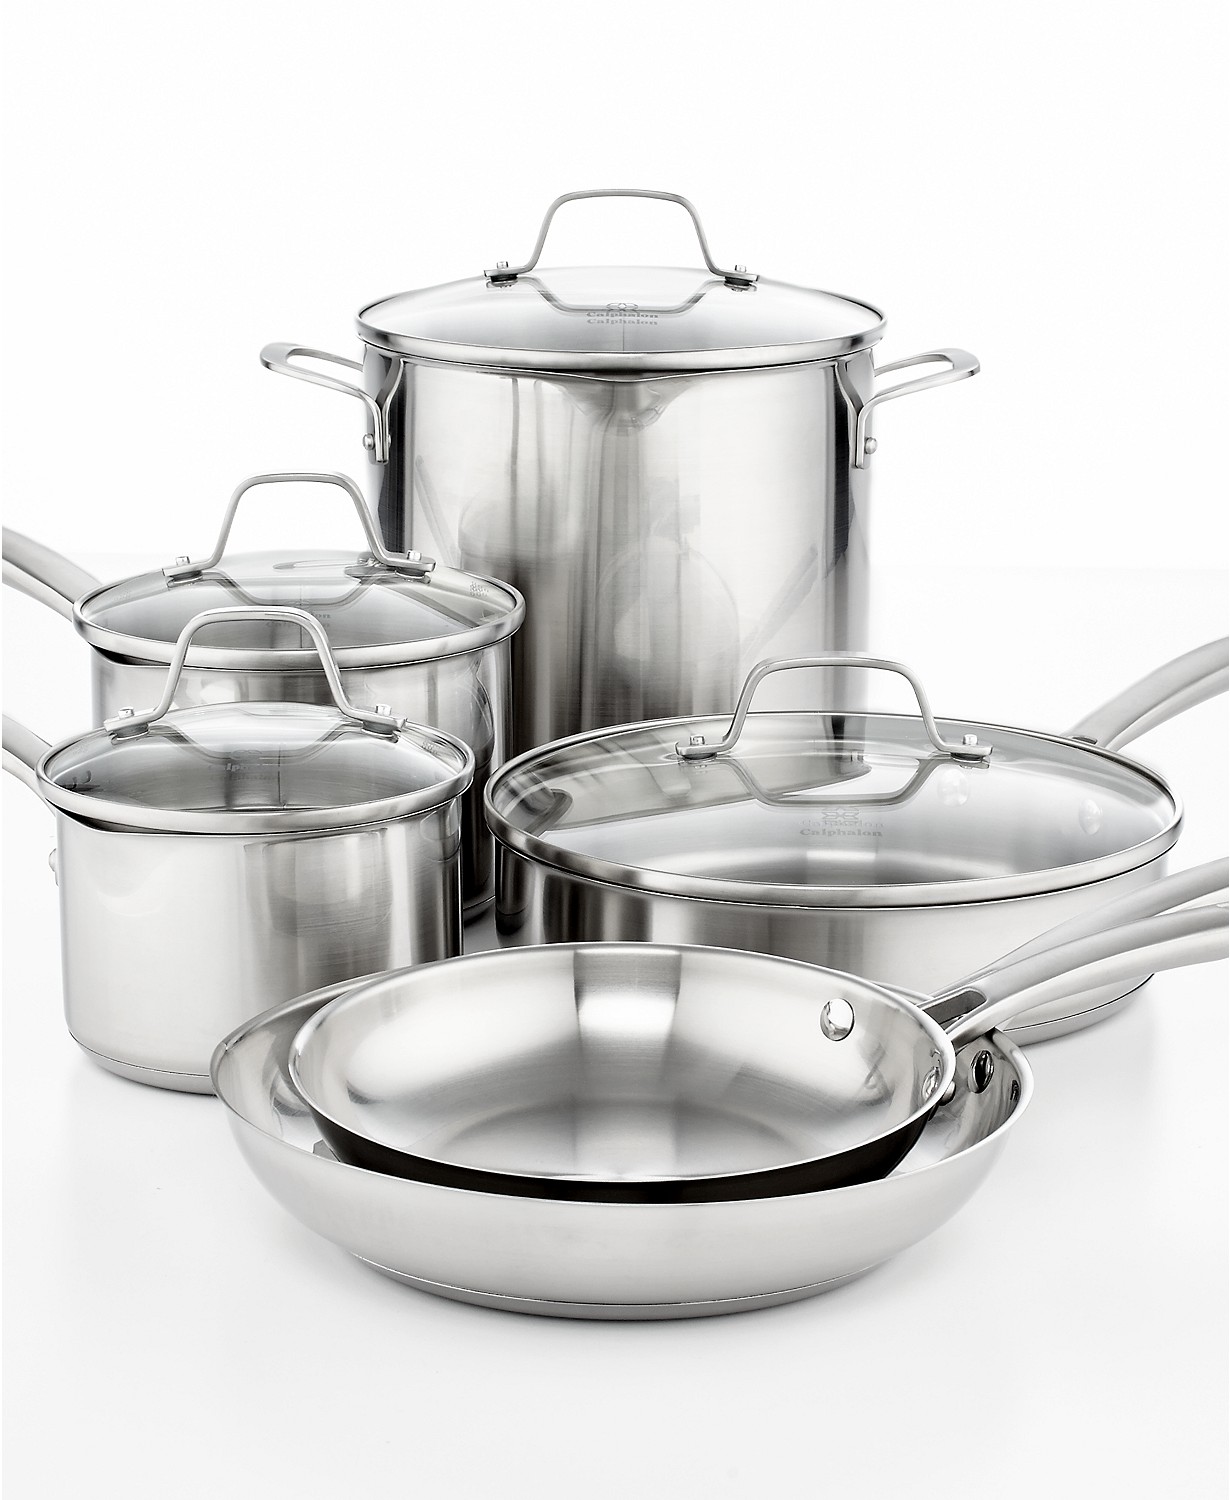 Calphalon Classic Pots and Pans Set, 10-Piece Cookware Set, Stainless Calphalon Stainless Steel Pan Set